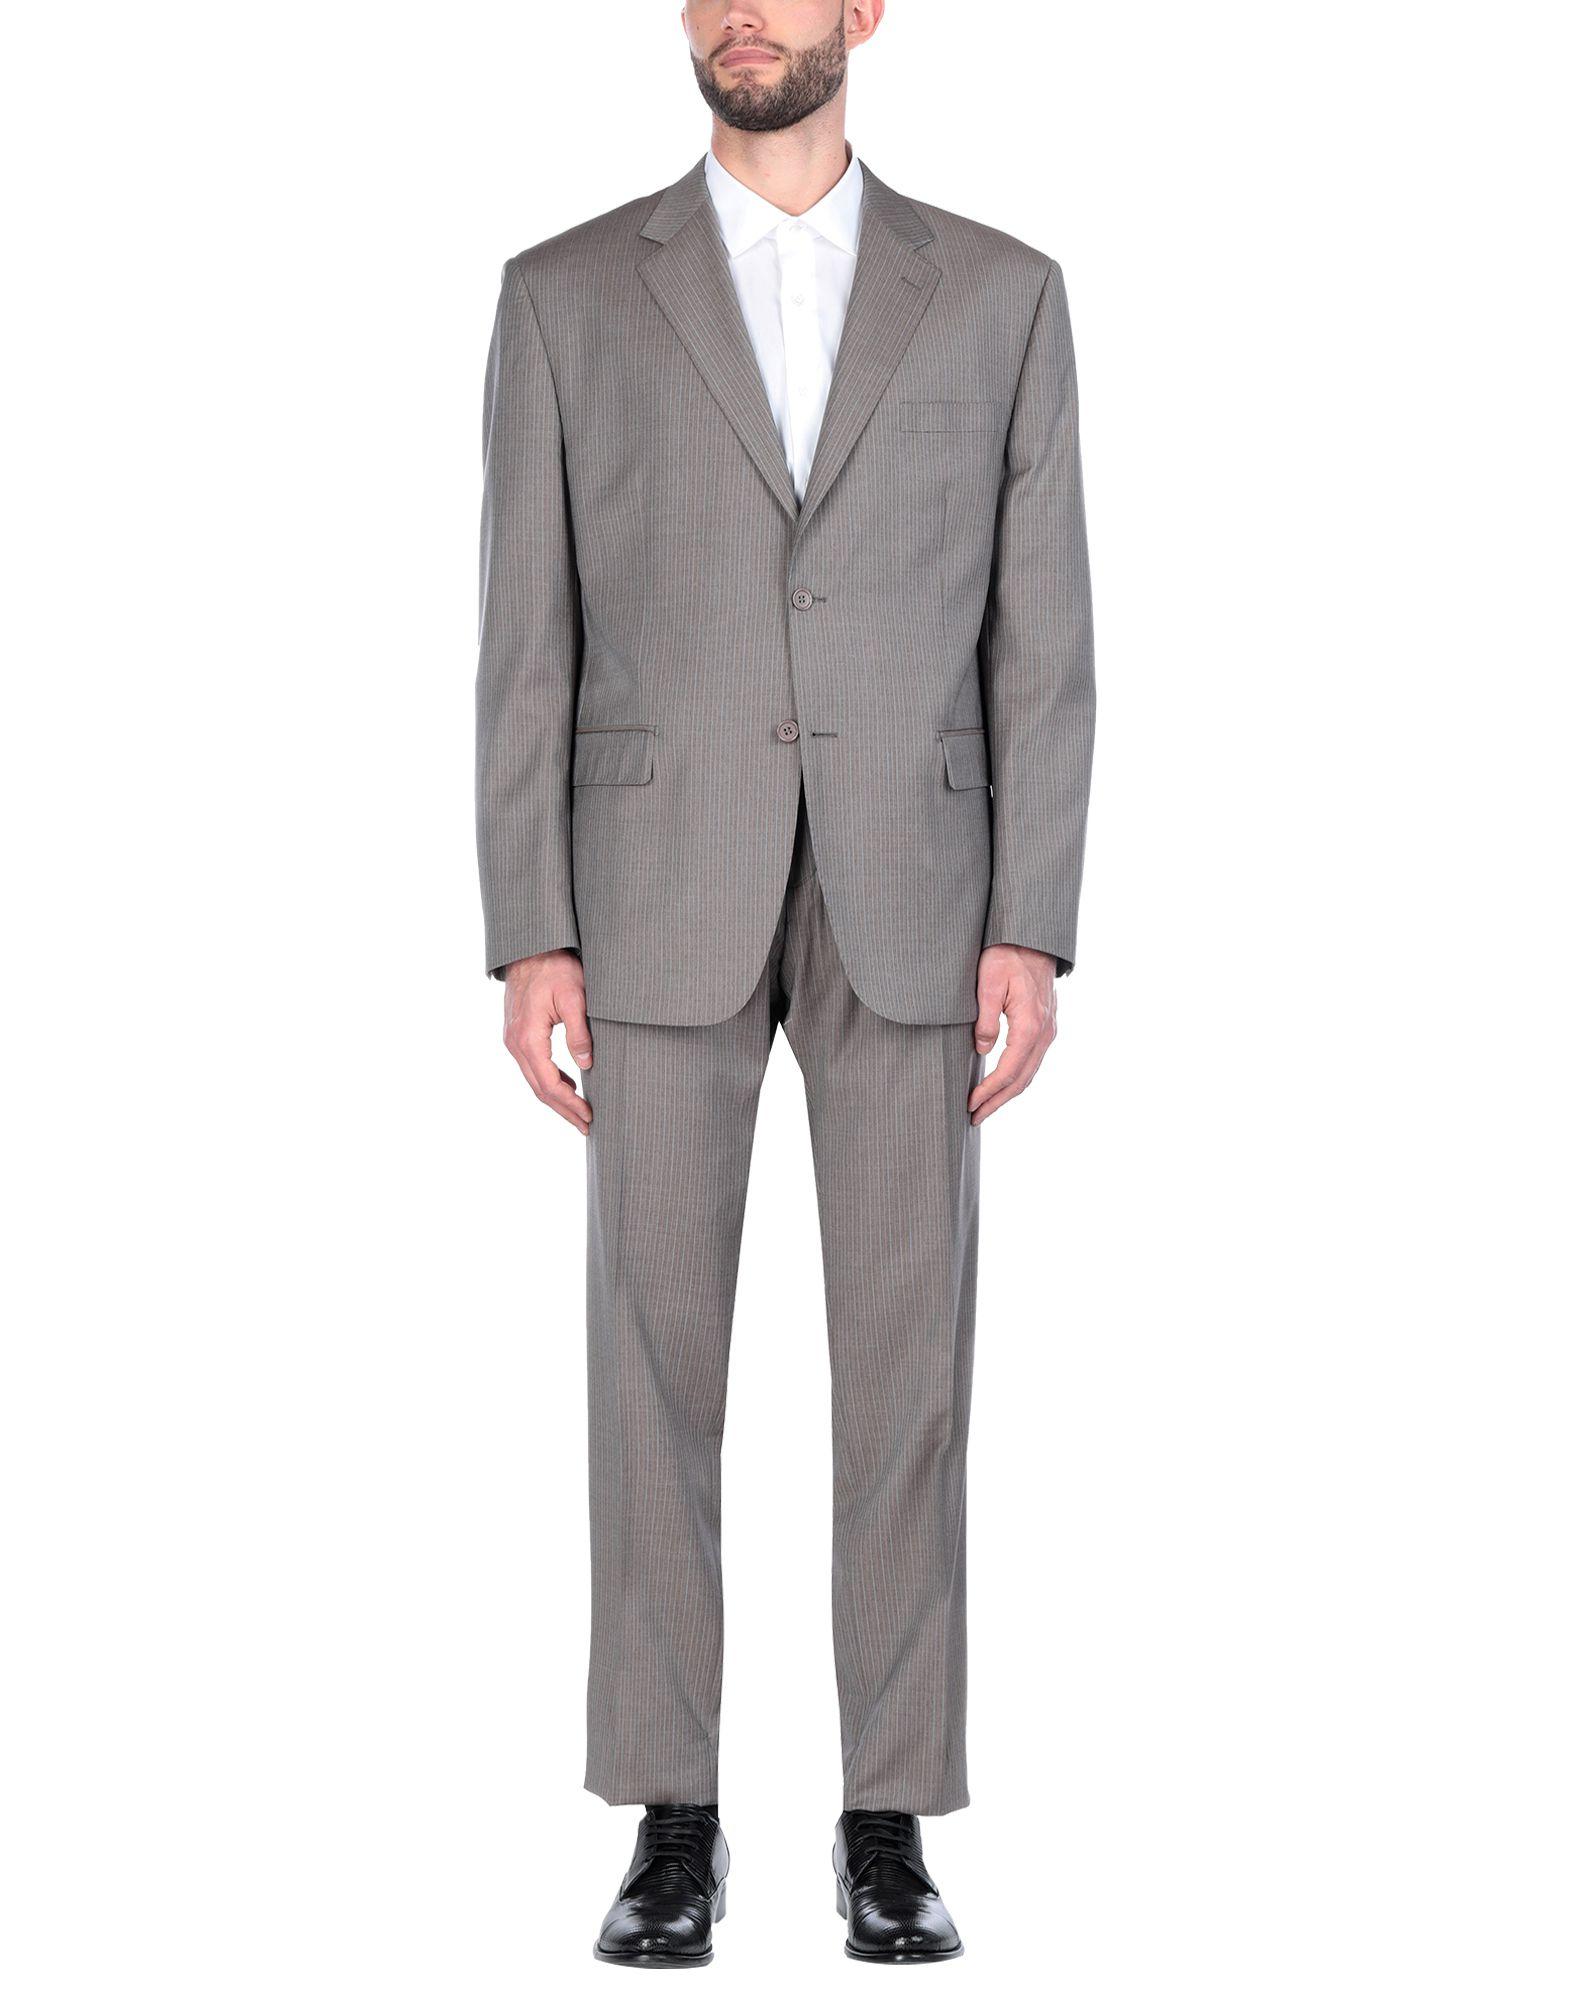 Tru Trussardi Wool Suit in Khaki (Gray) for Men - Lyst